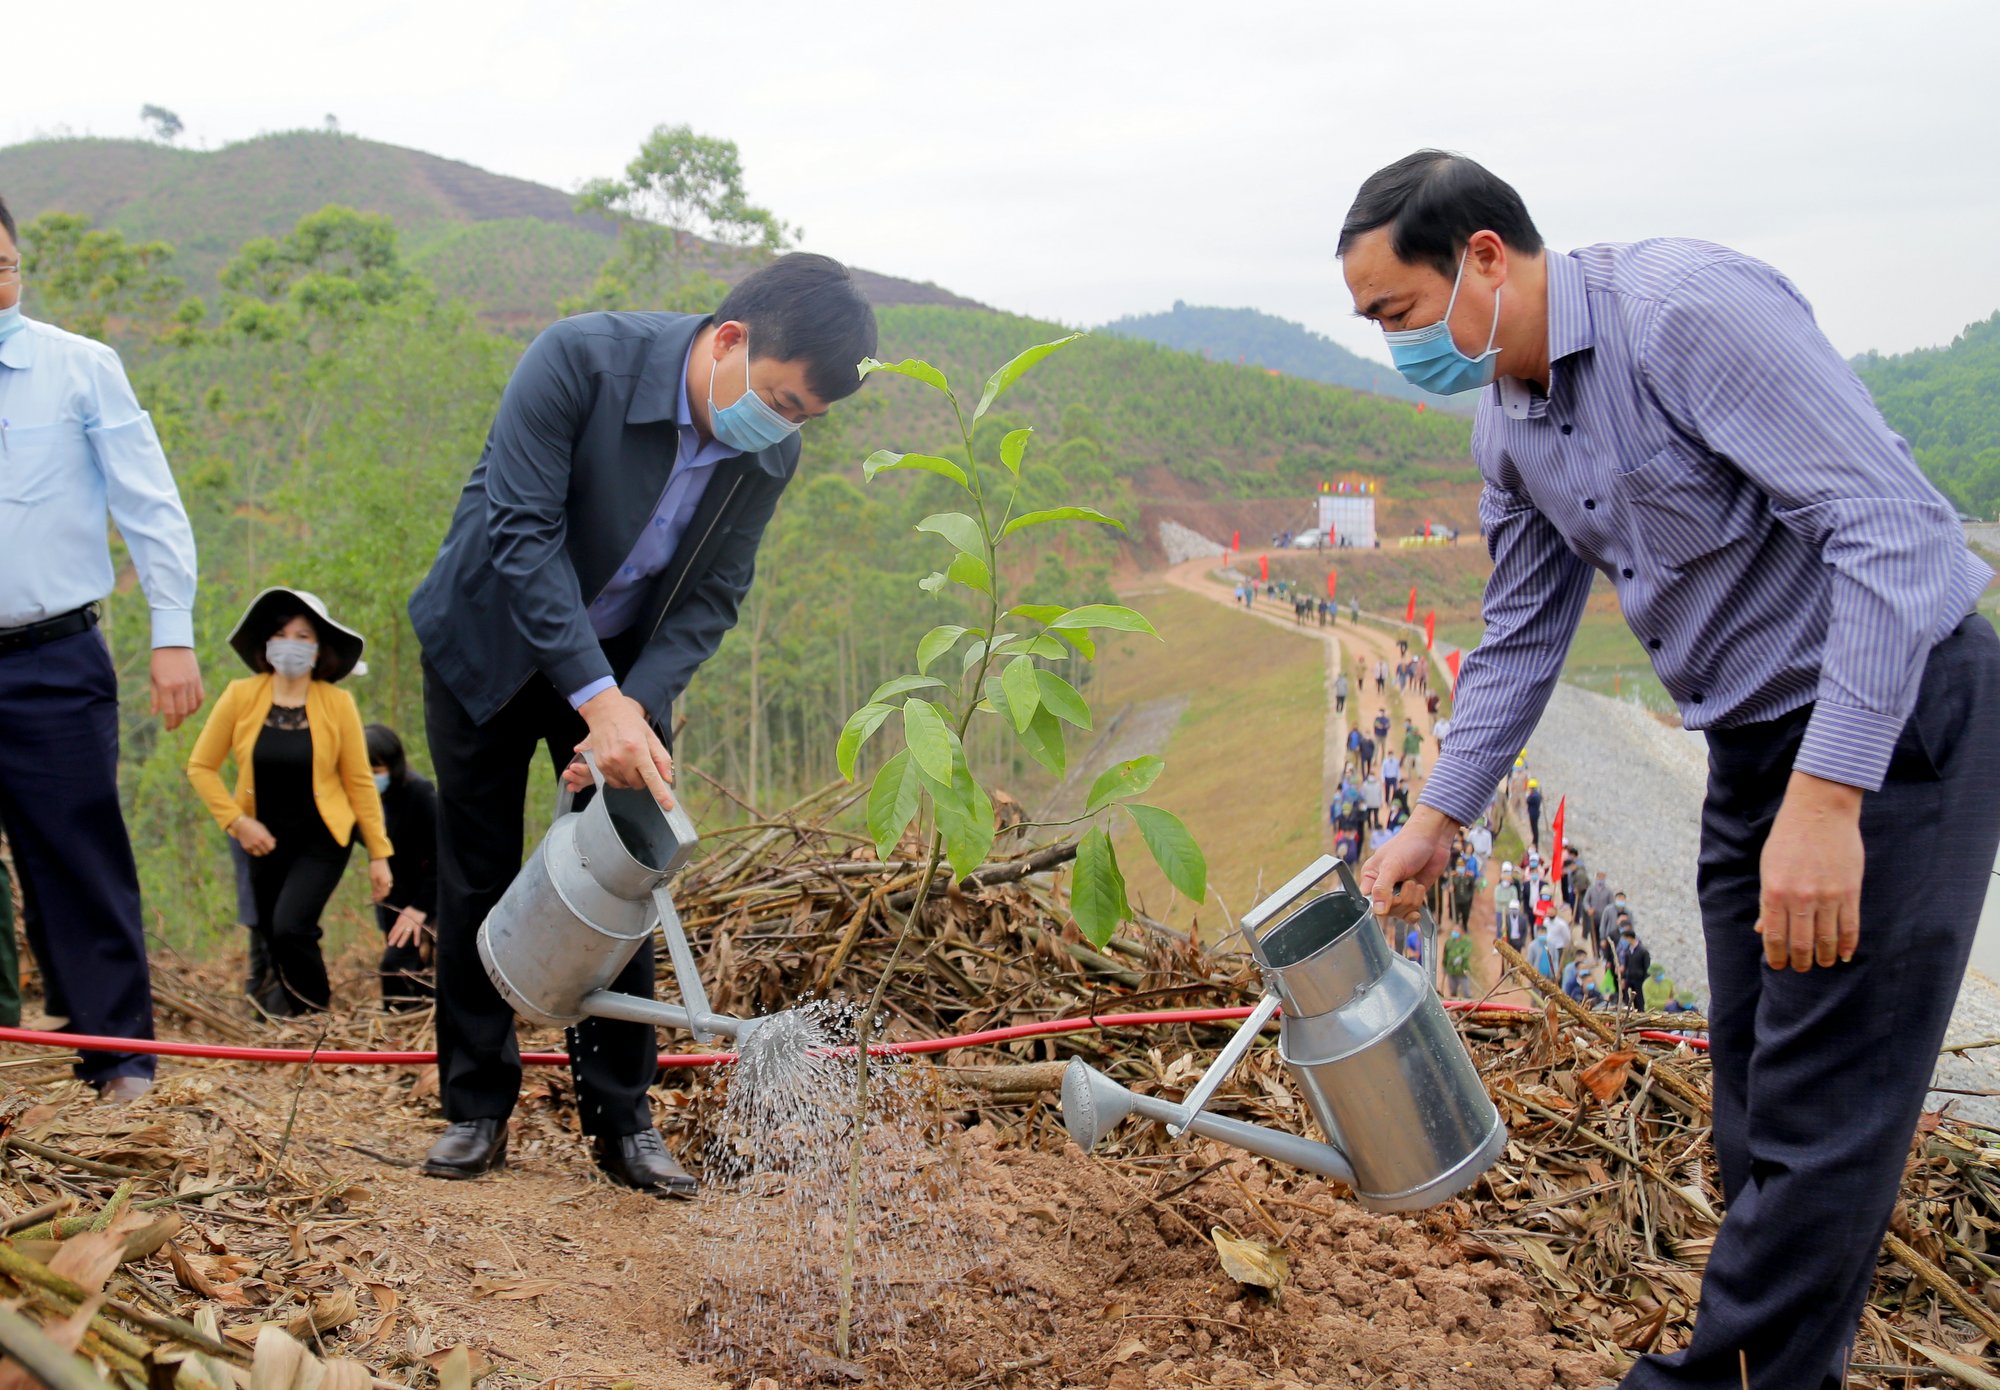 Đồng chí Ngô Hoàng Ngân, Phó Bí thư Thường trực Tỉnh ủy trực tiếp trồng cây Dổi hạt đầu tiên tại khu vực 